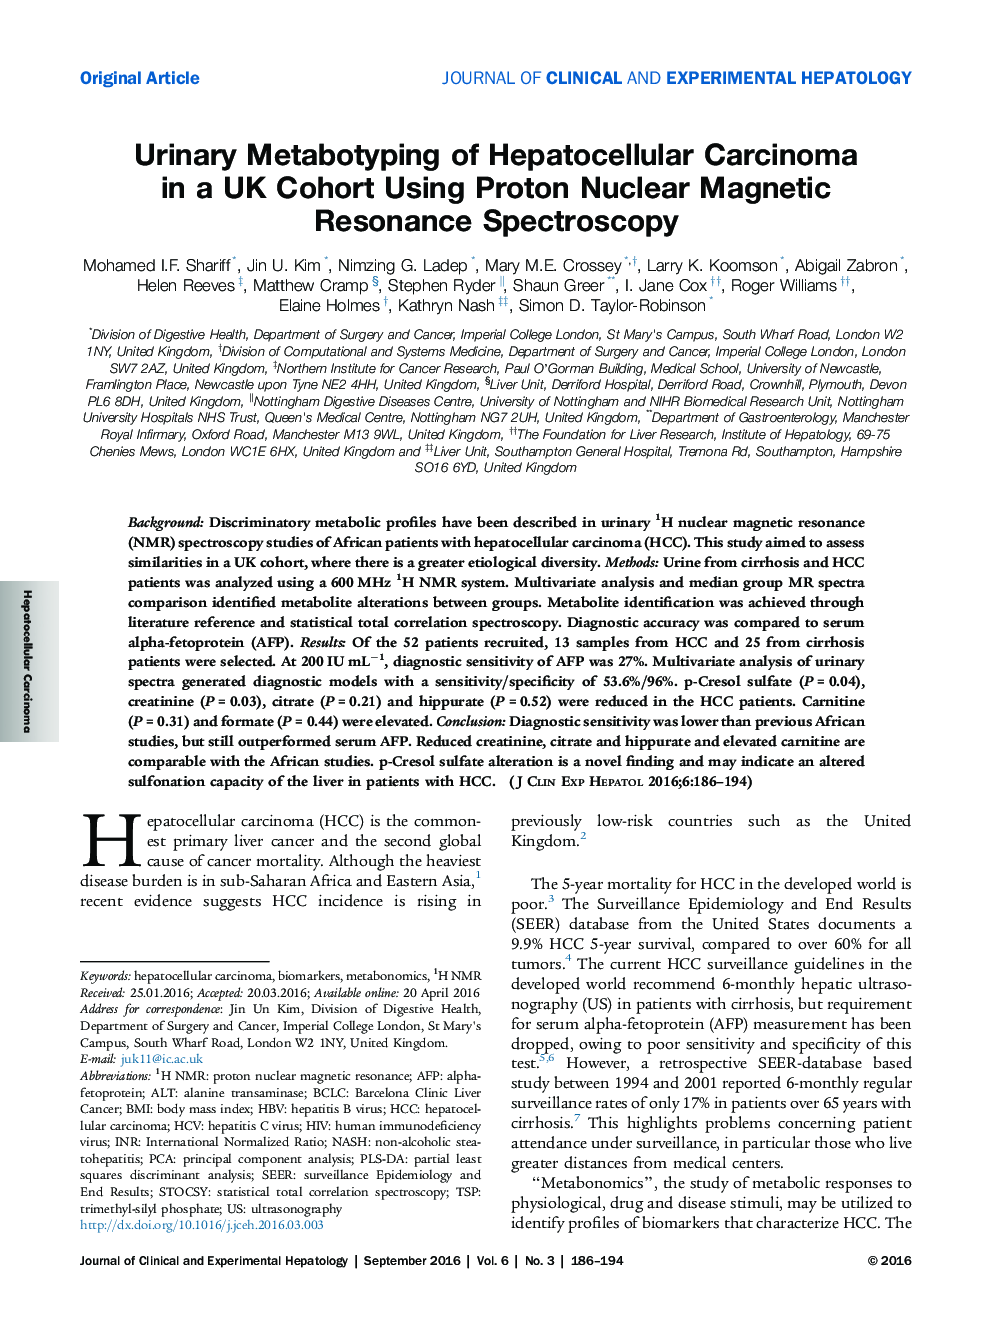 متابولیسم ادراری کارسینوم هپاتوسلولار در یک گروه کوهورت انگلستان با استفاده از طیف سنجی رزونانس مغناطیسی هسته پروتون 